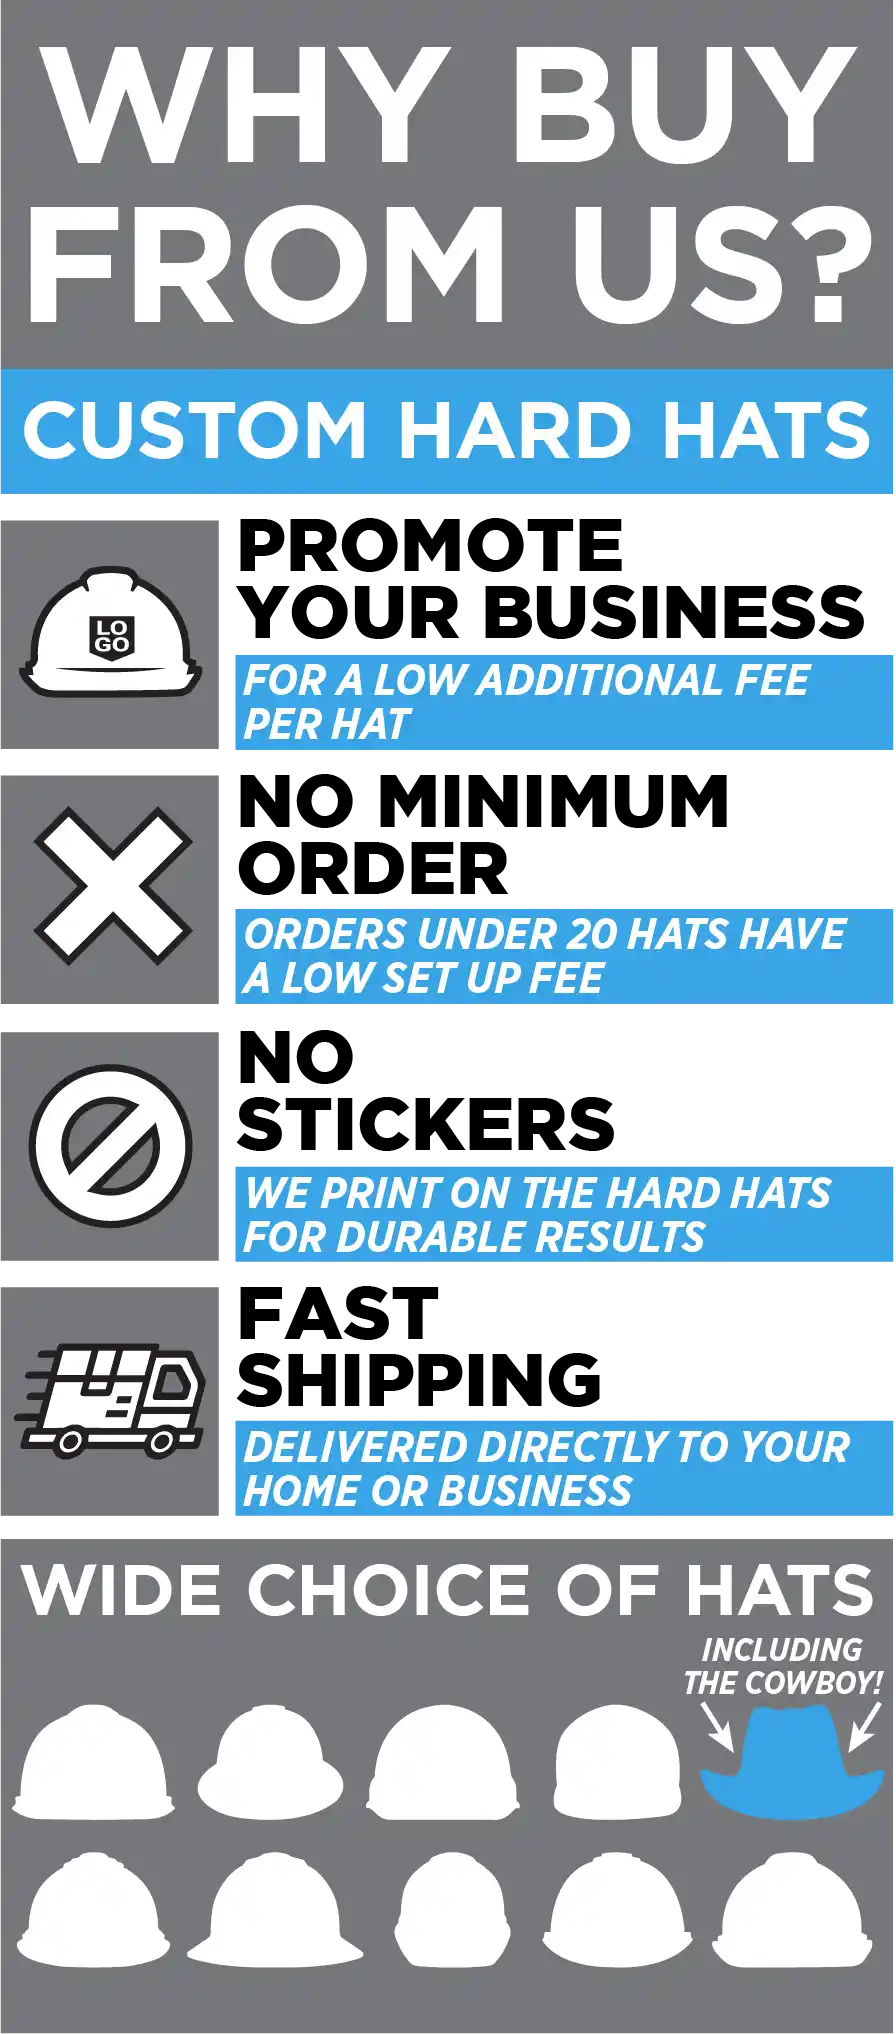 Why buy custom hard hats from us?